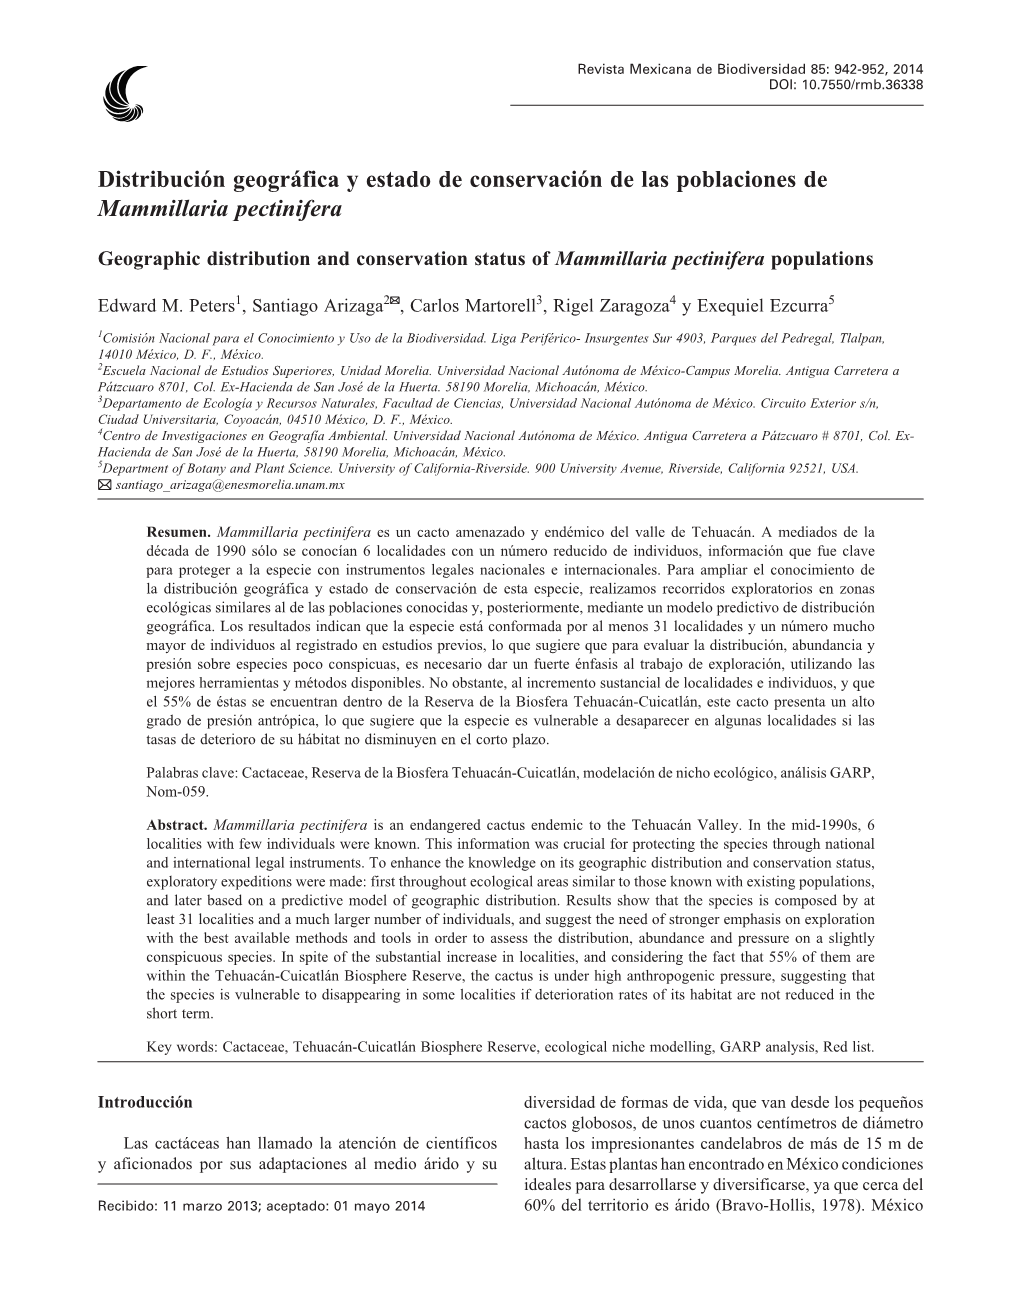 Distribución Geográfica Y Estado De Conservación De Las Poblaciones De Mammillaria Pectinifera